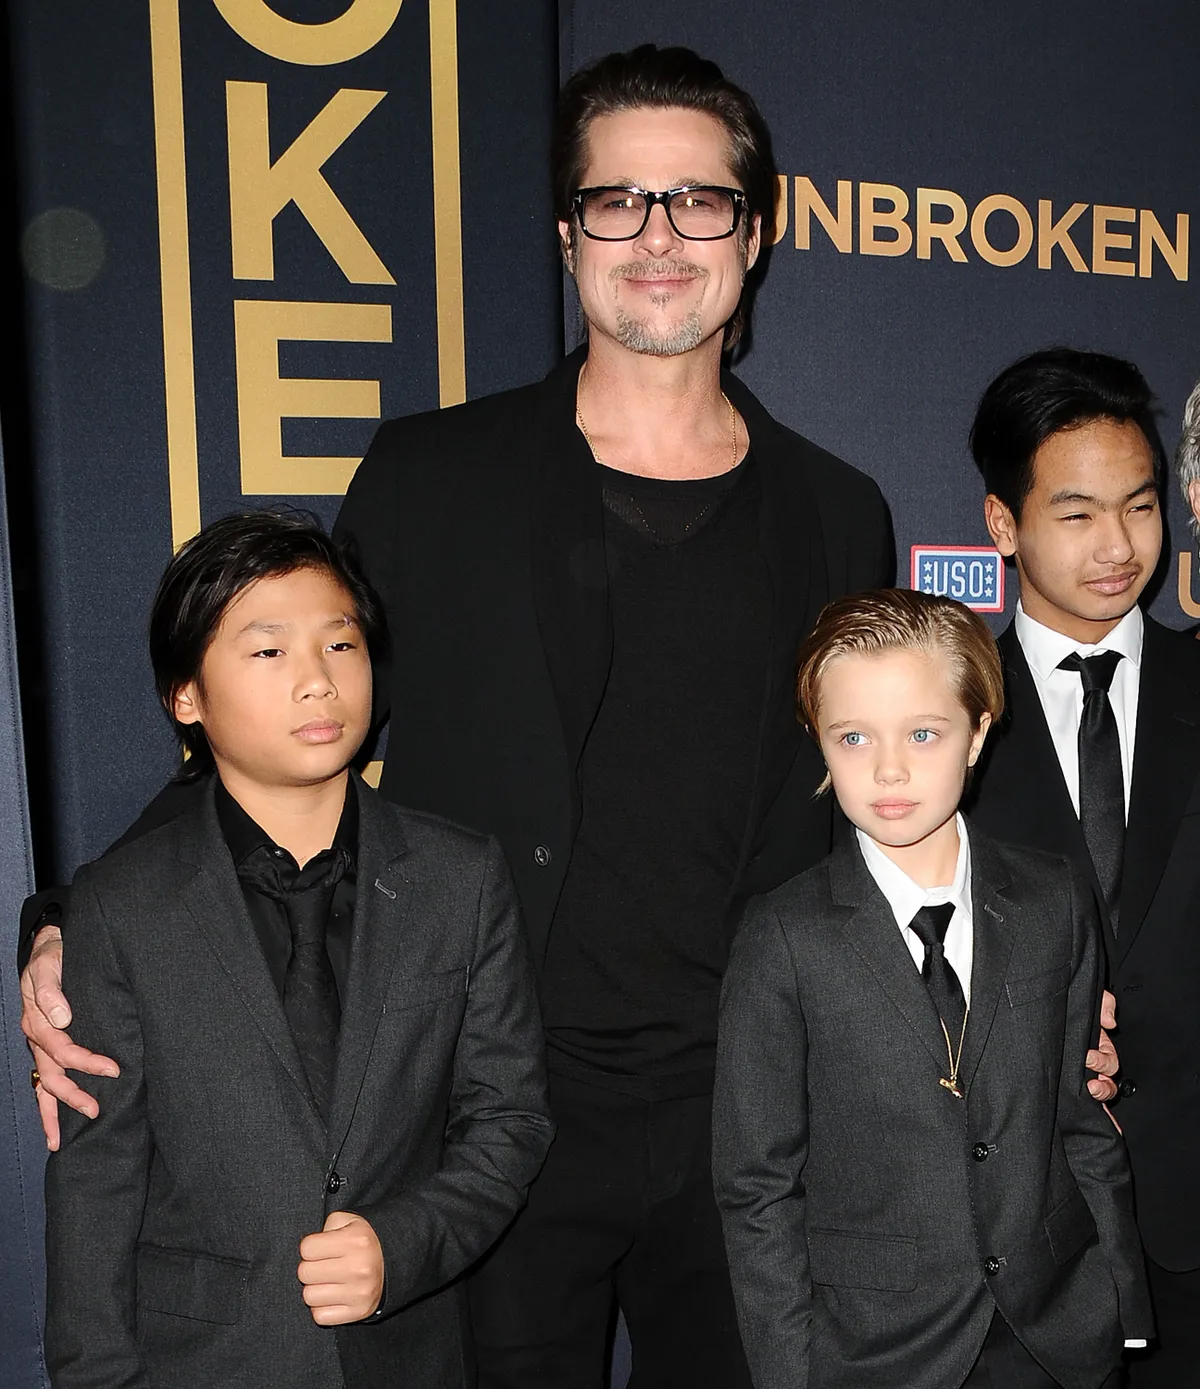 Pax Jolie-Pitt, Brad Pitt, Shiloh Jolie-Pitt und Maddox Jolie-Pitt bei der Premiere von "Unbroken", 2014 | Quelle: Getty Images